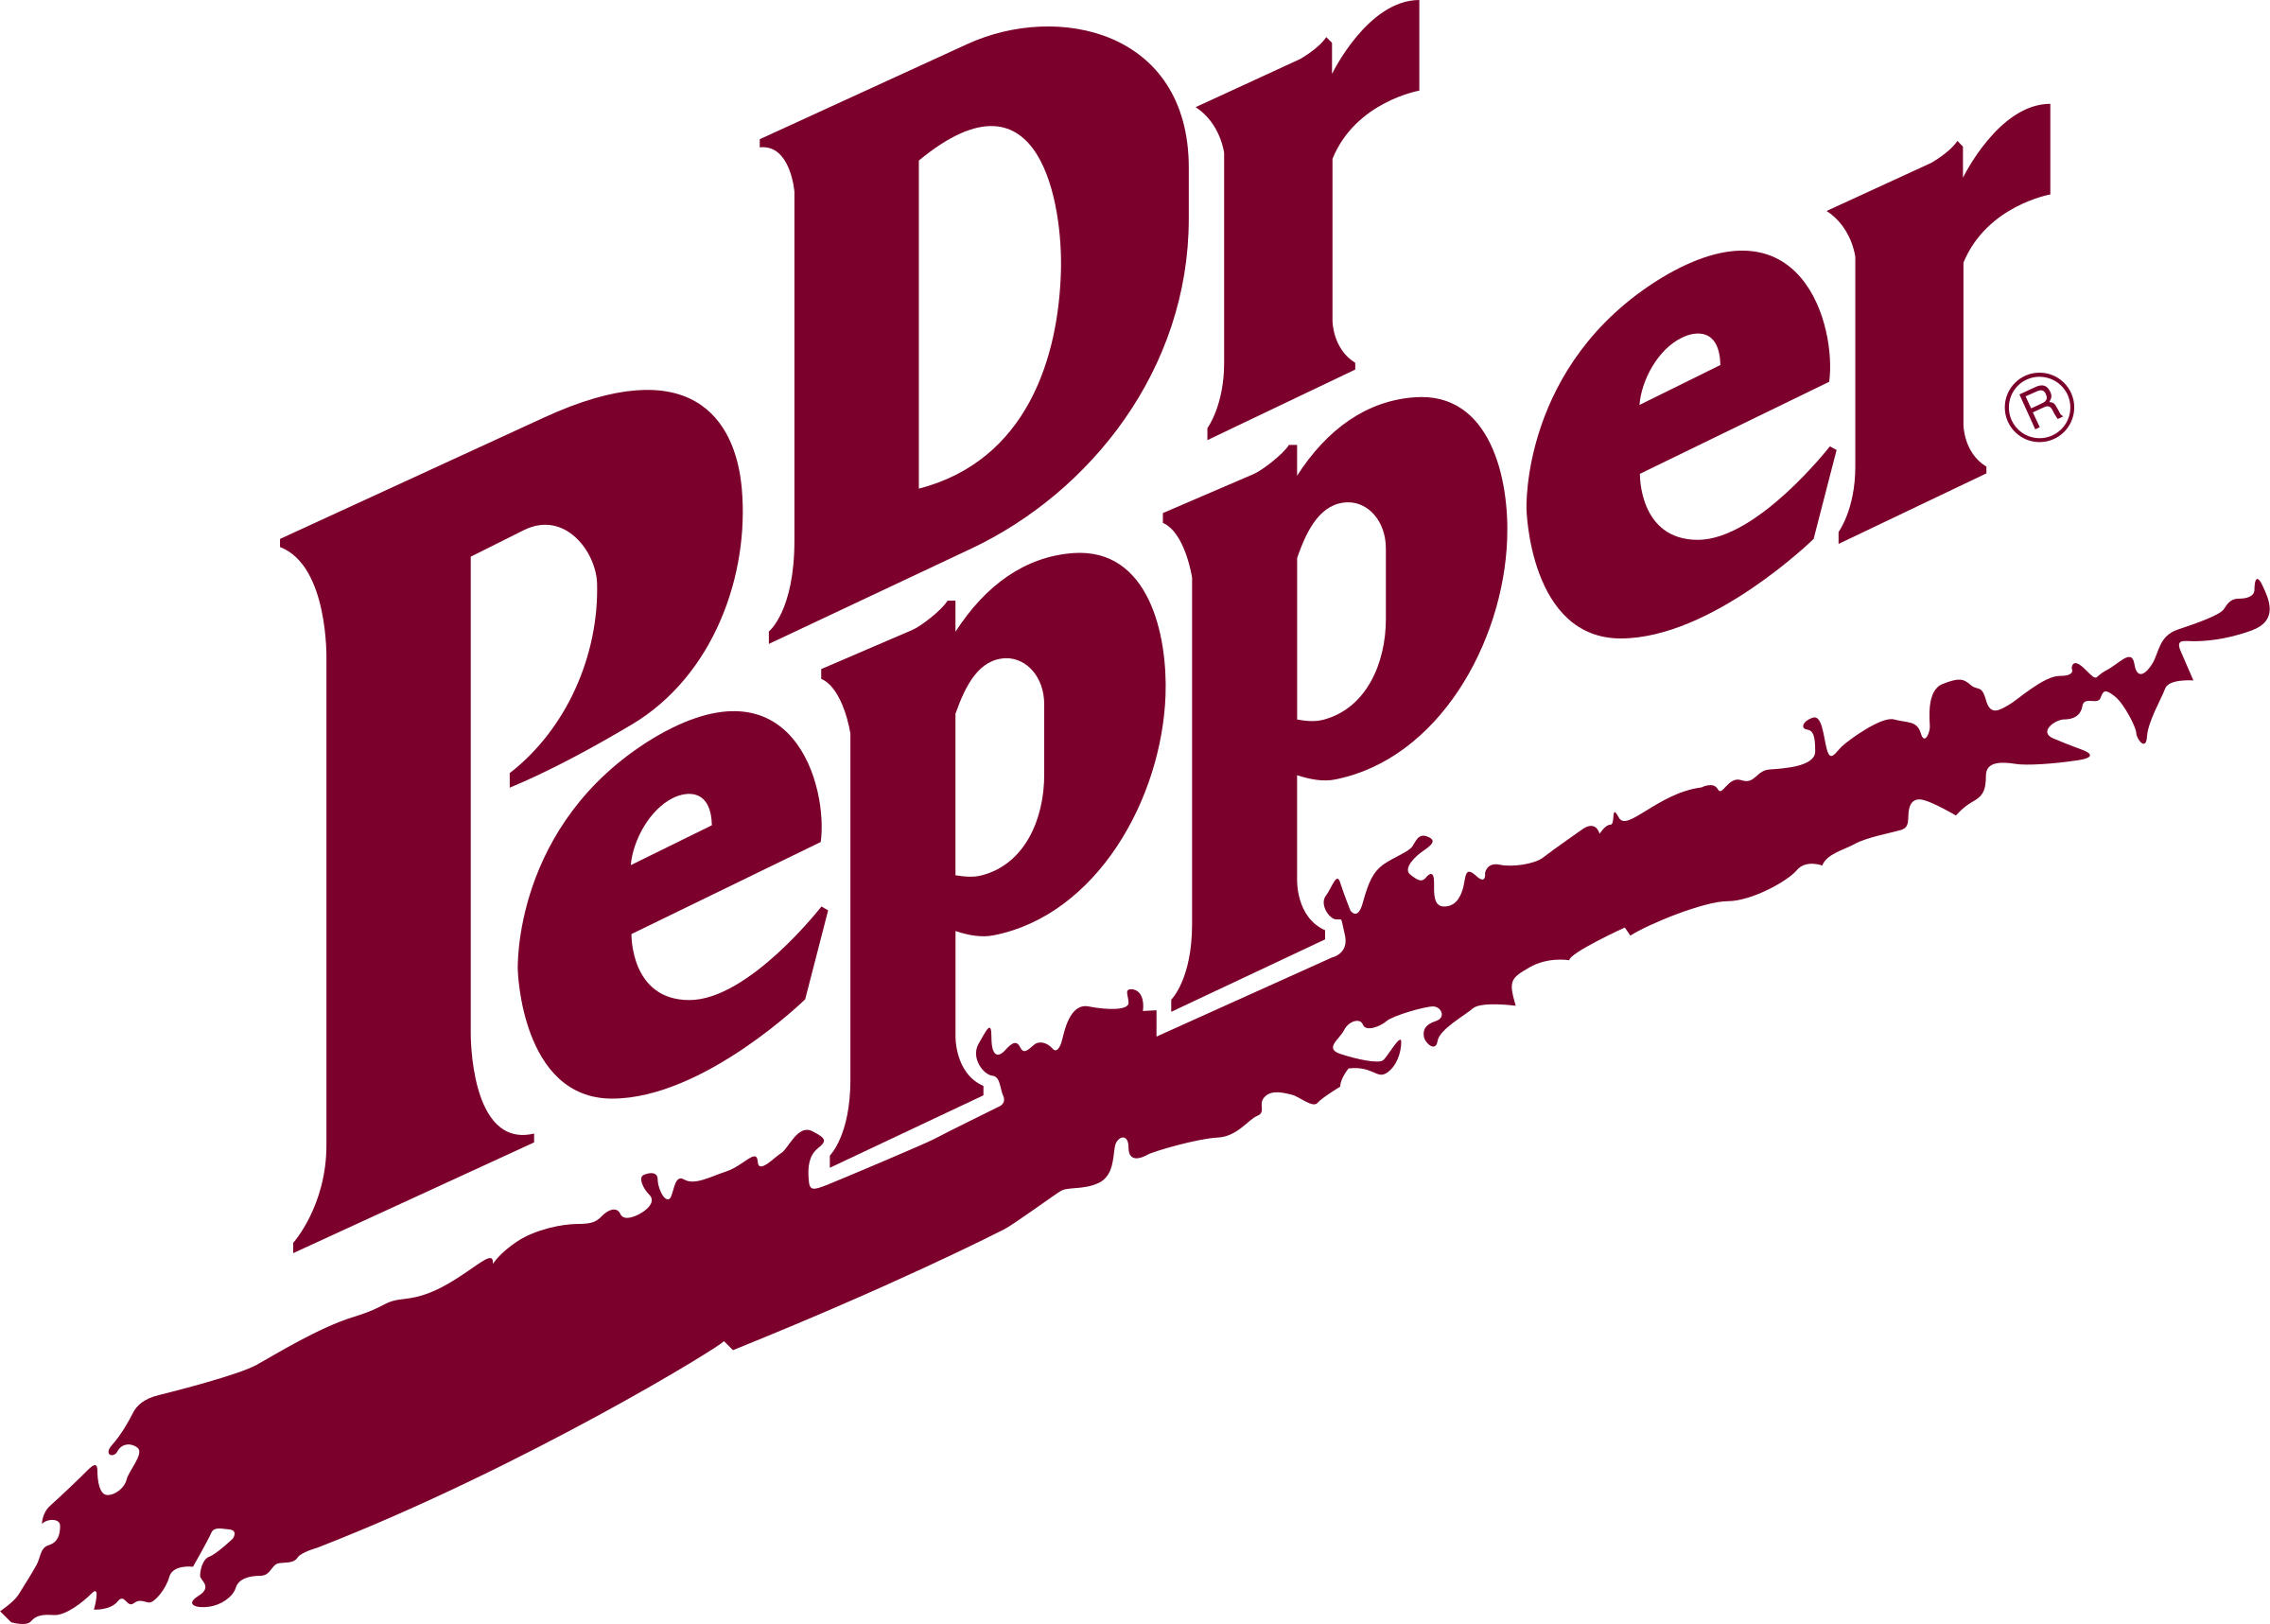 Dr Pepper Logo PNG File